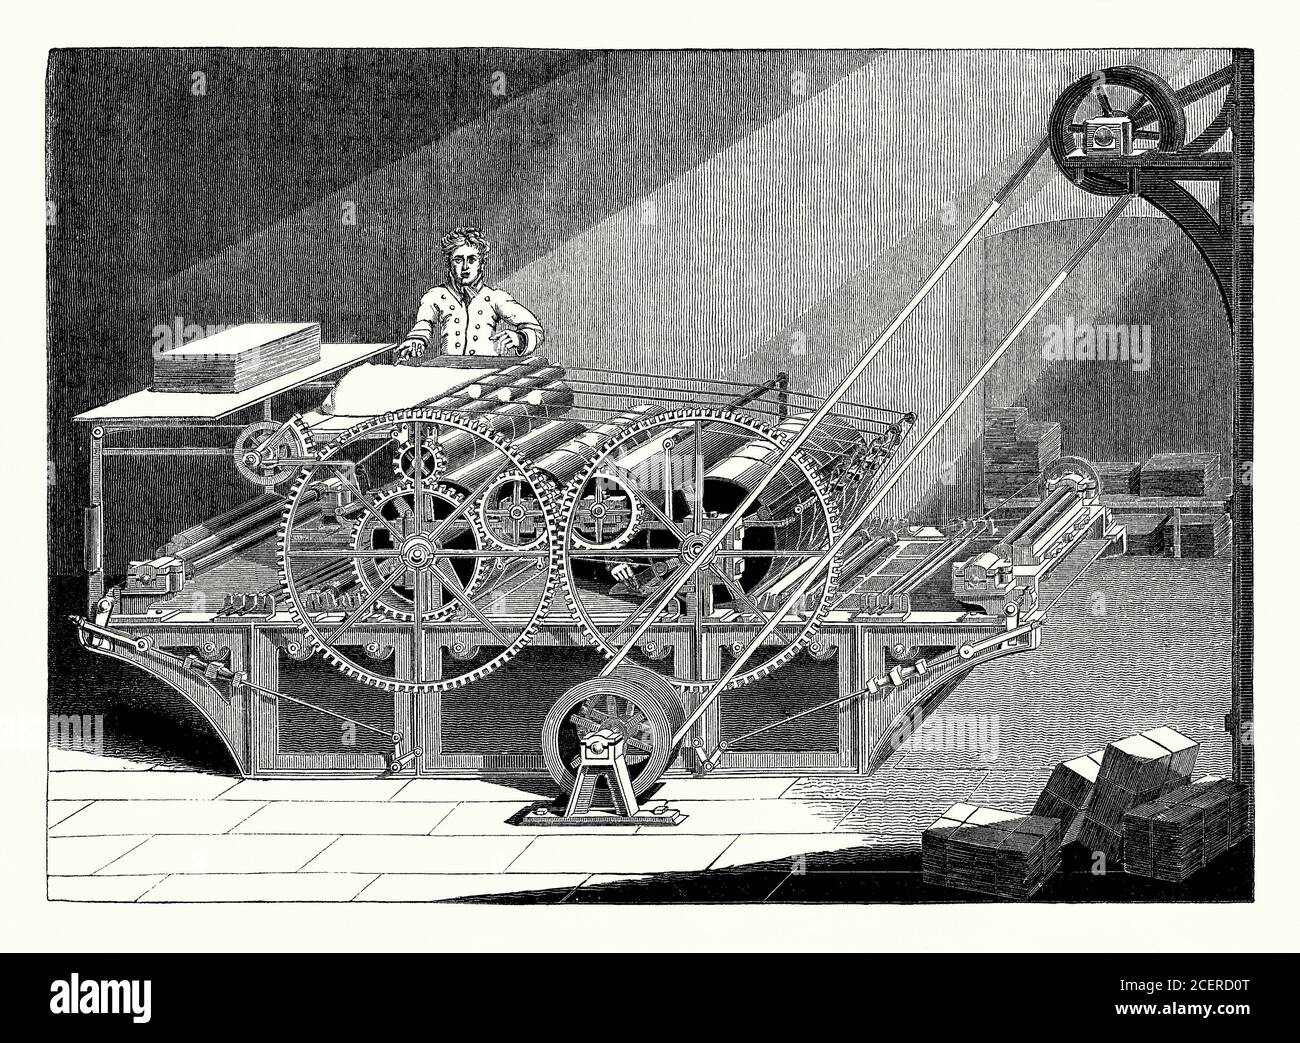 Una vecchia incisione del 1800 di una pressa rotativa a vapore, a cilindro,  utilizzata nella rivoluzione industriale dell'epoca vittoriana. I tedeschi  Friedrich Koenig e Andreas Bauer progettarono e costruirono la loro prima